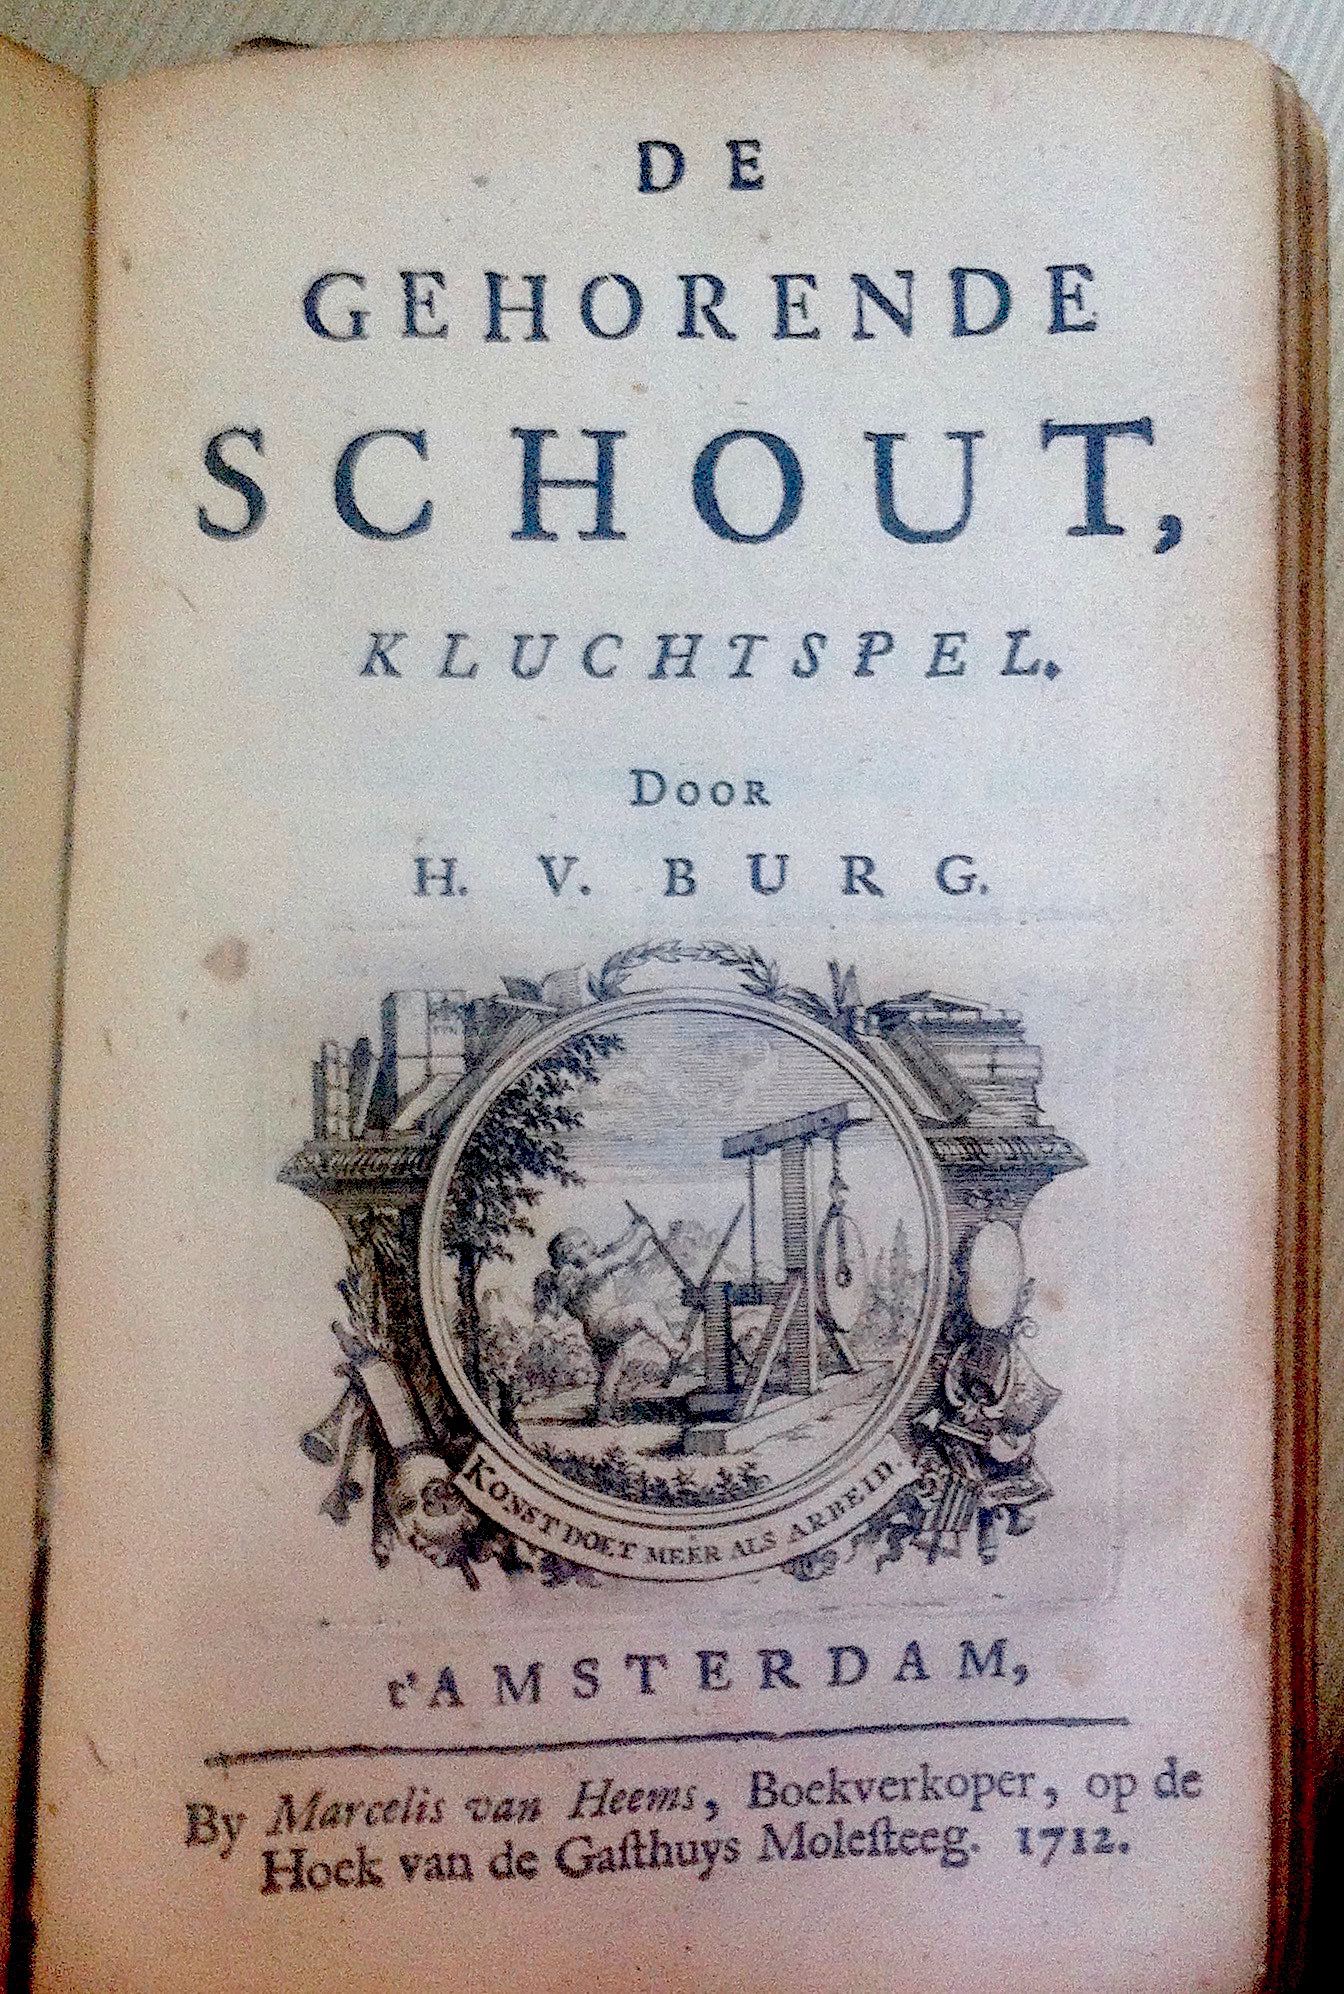 BurgSchout171201